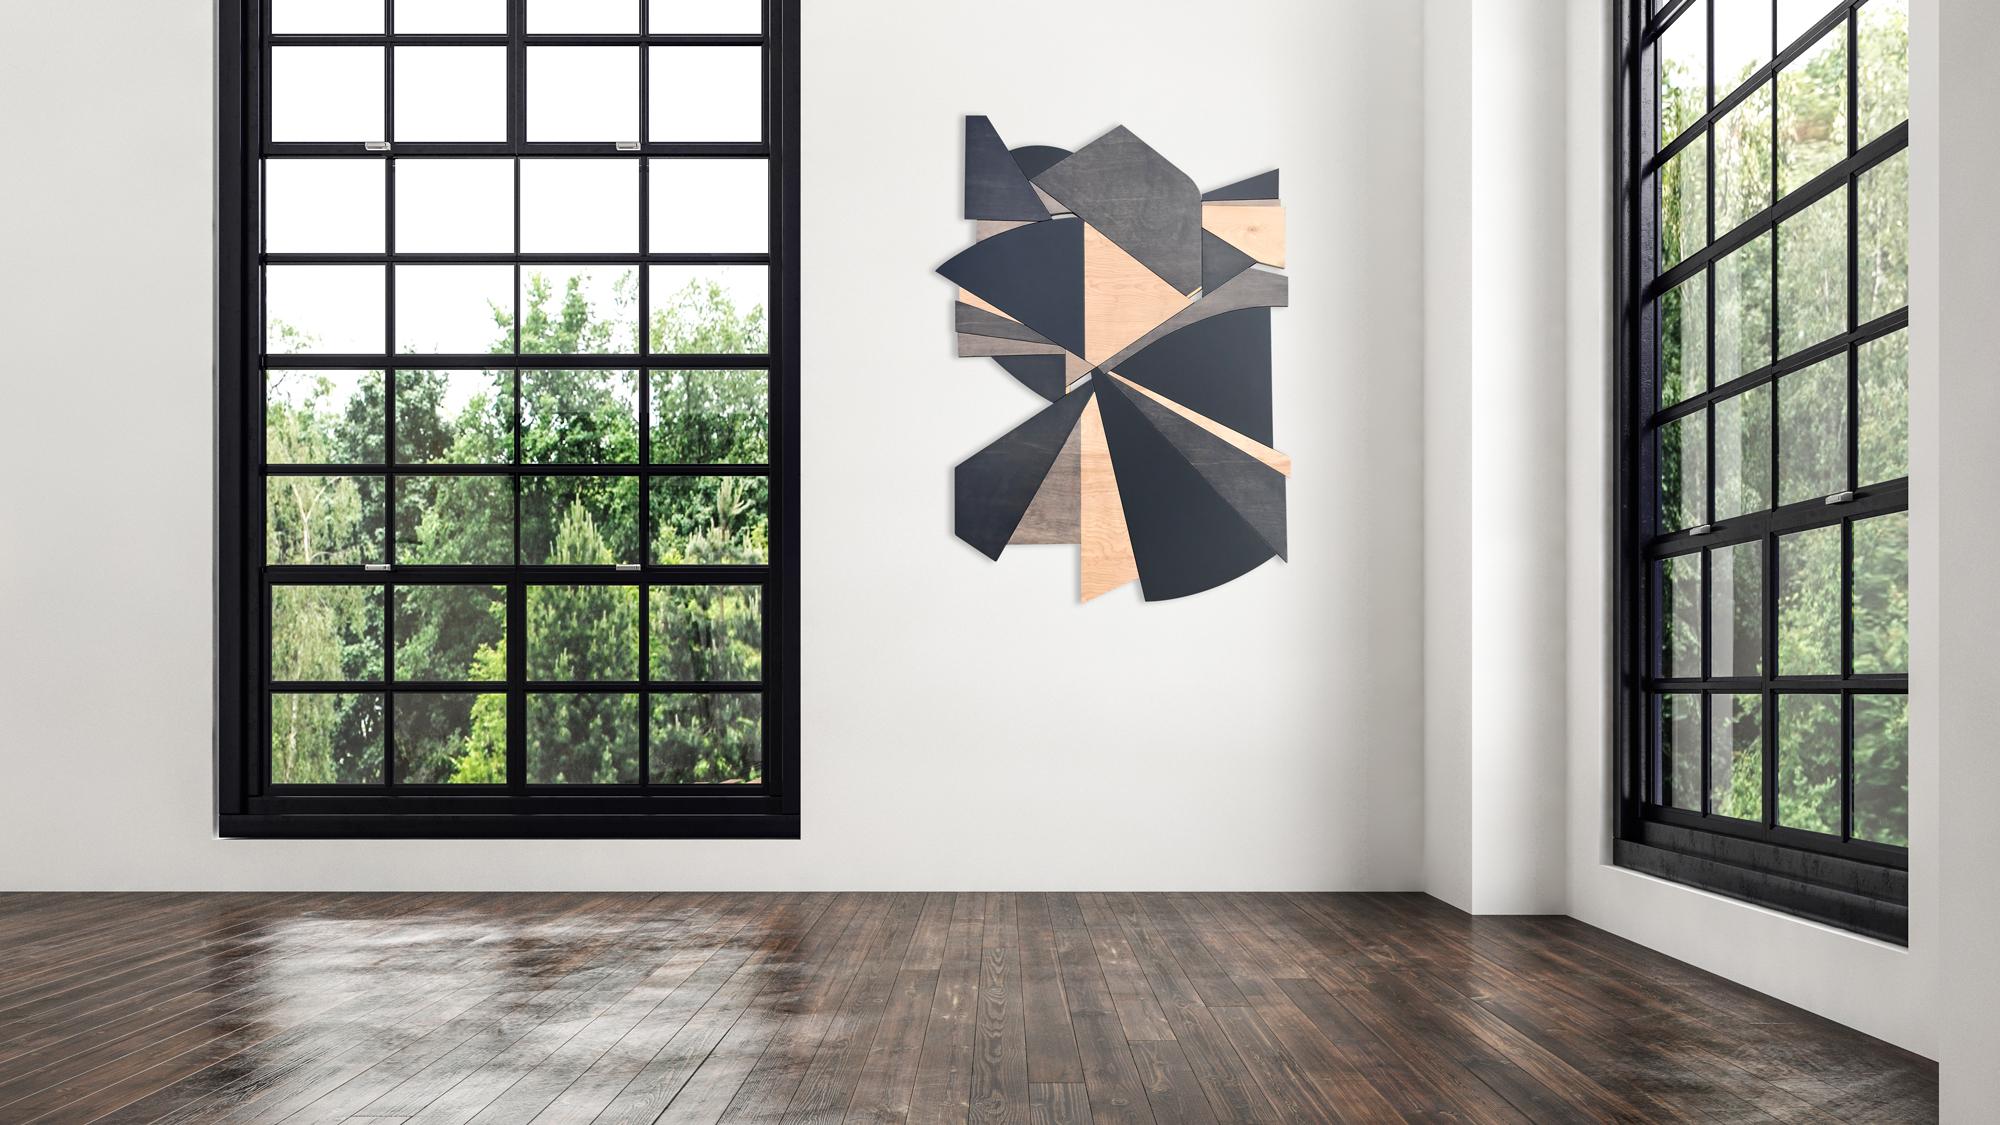 Deceptor est une sculpture murale minimaliste, monochromatique et contemporaine. Il est construit avec des panneaux de bouleau, des lavages acryliques et complété par une finition en laque satinée. La peinture est légèrement dégradée, ce qui donne à